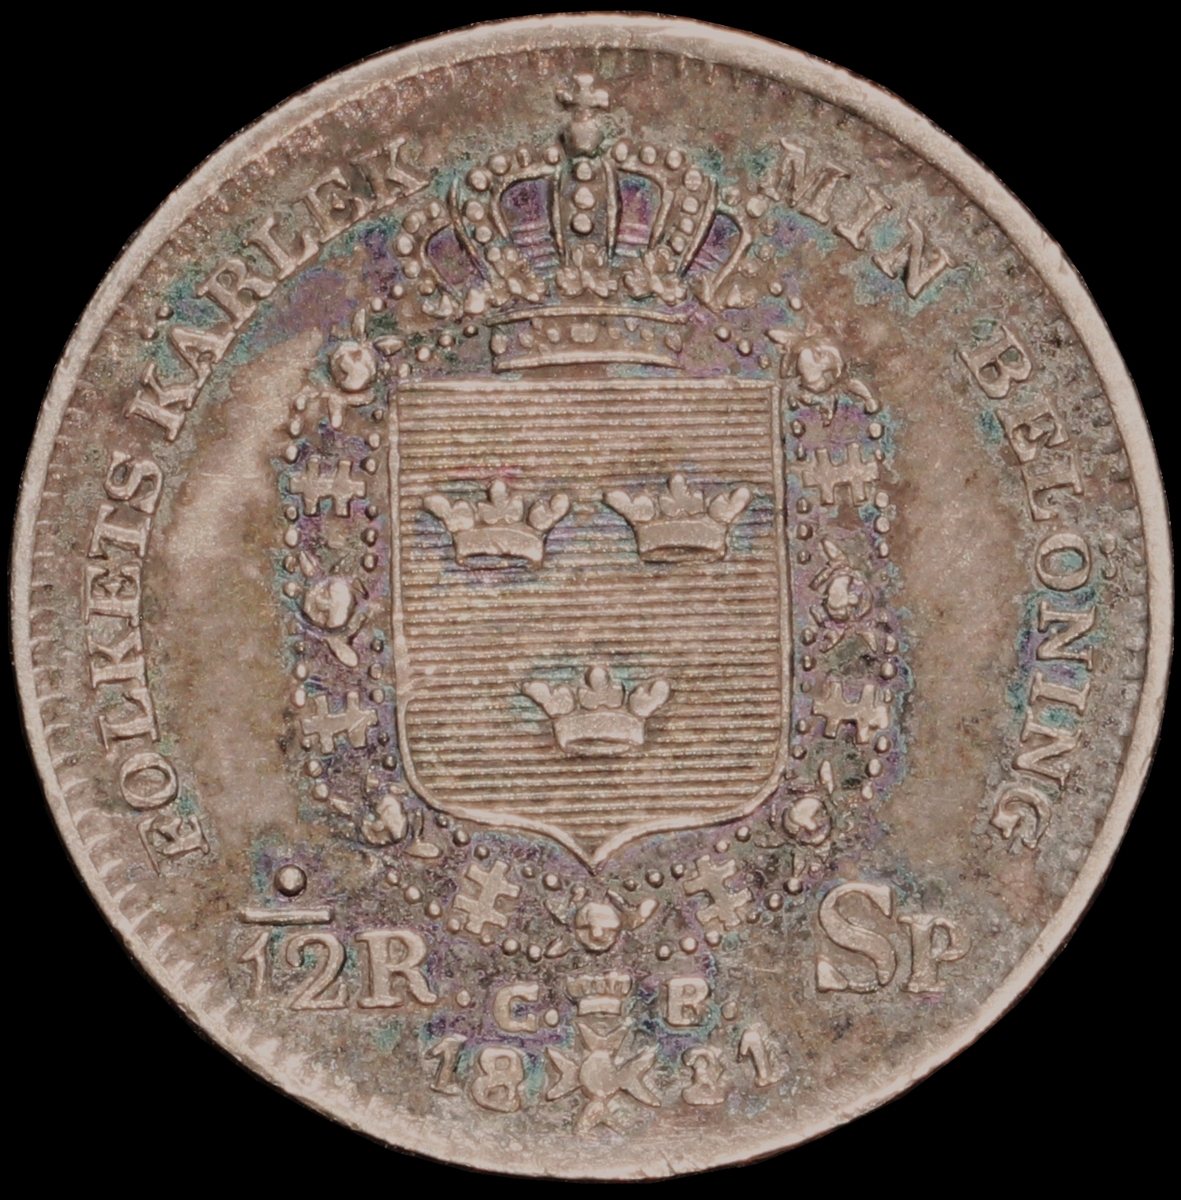 Mynt med valören 1/12 riksdaler specie. Åtsidan har en bild av Kung Karl XIV Johan och frånsidan visar lilla riksvapnet, valör samt kungens valspråk "Folkets kärlek min belöning".